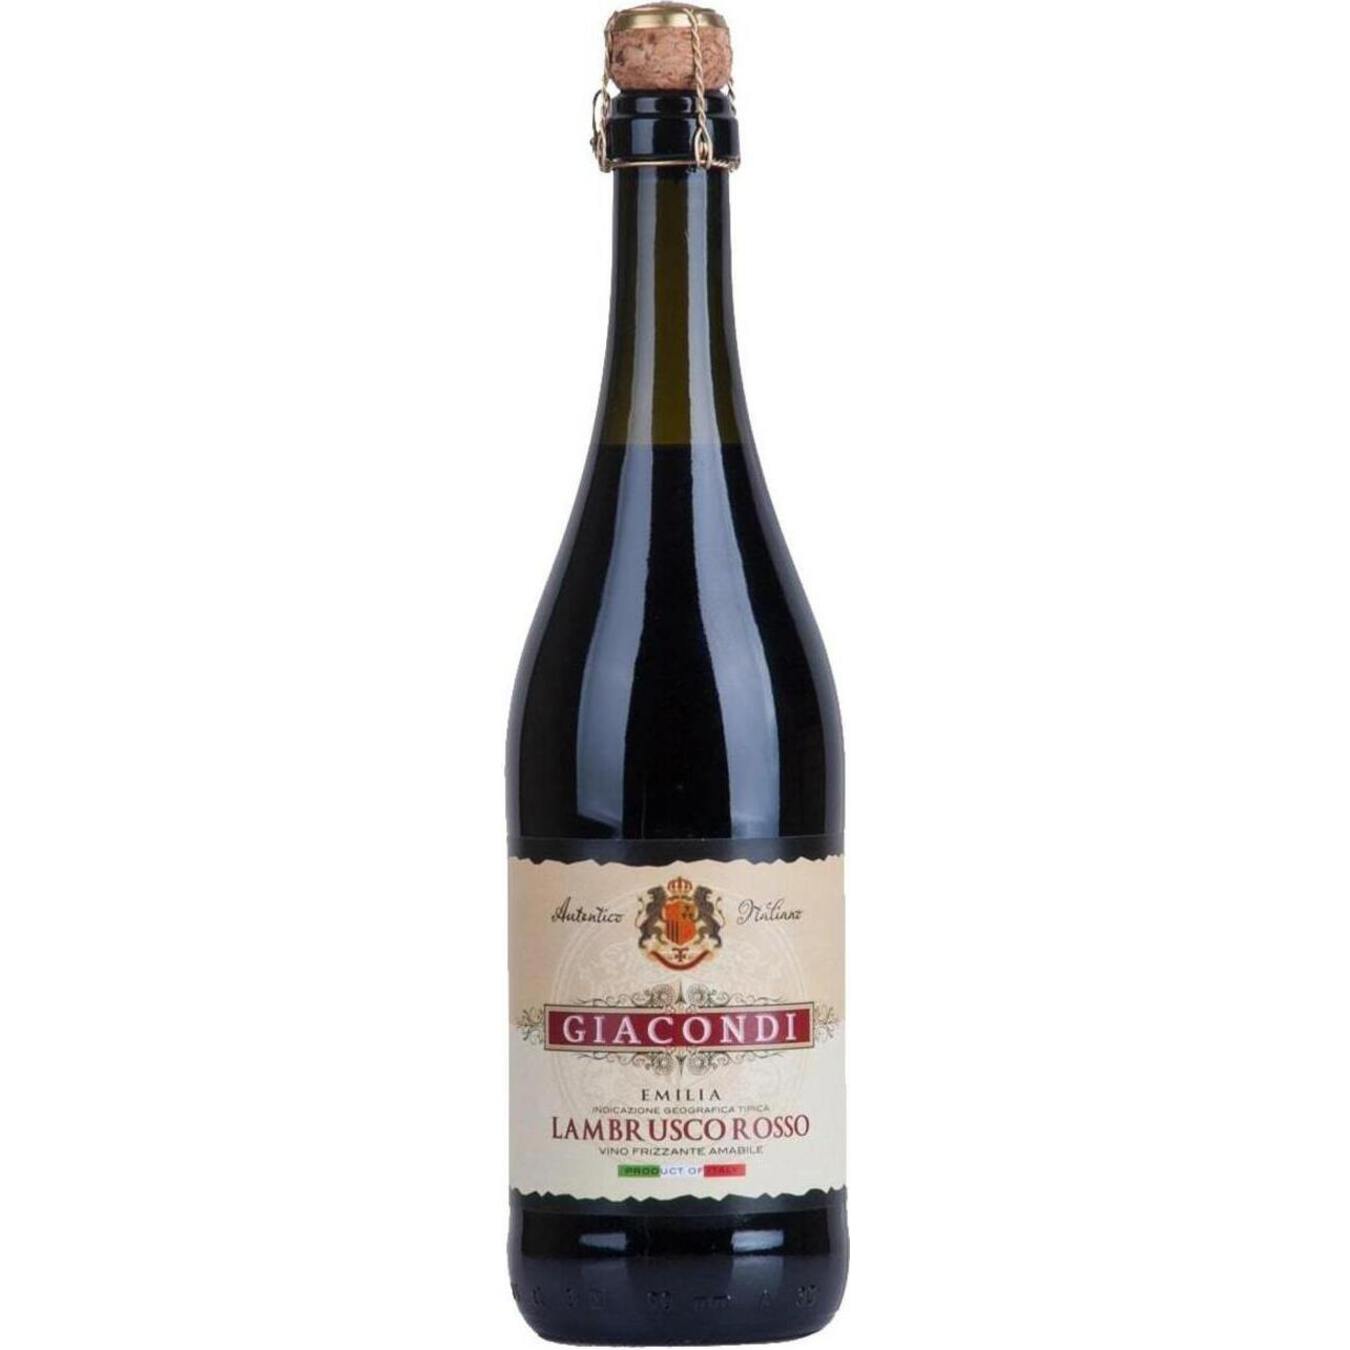 Sparkling Wine Giacondi Frizzante Lambrusco Rosso Amabile Emilia Red Semi-Dry 7,5% 0,75l 2